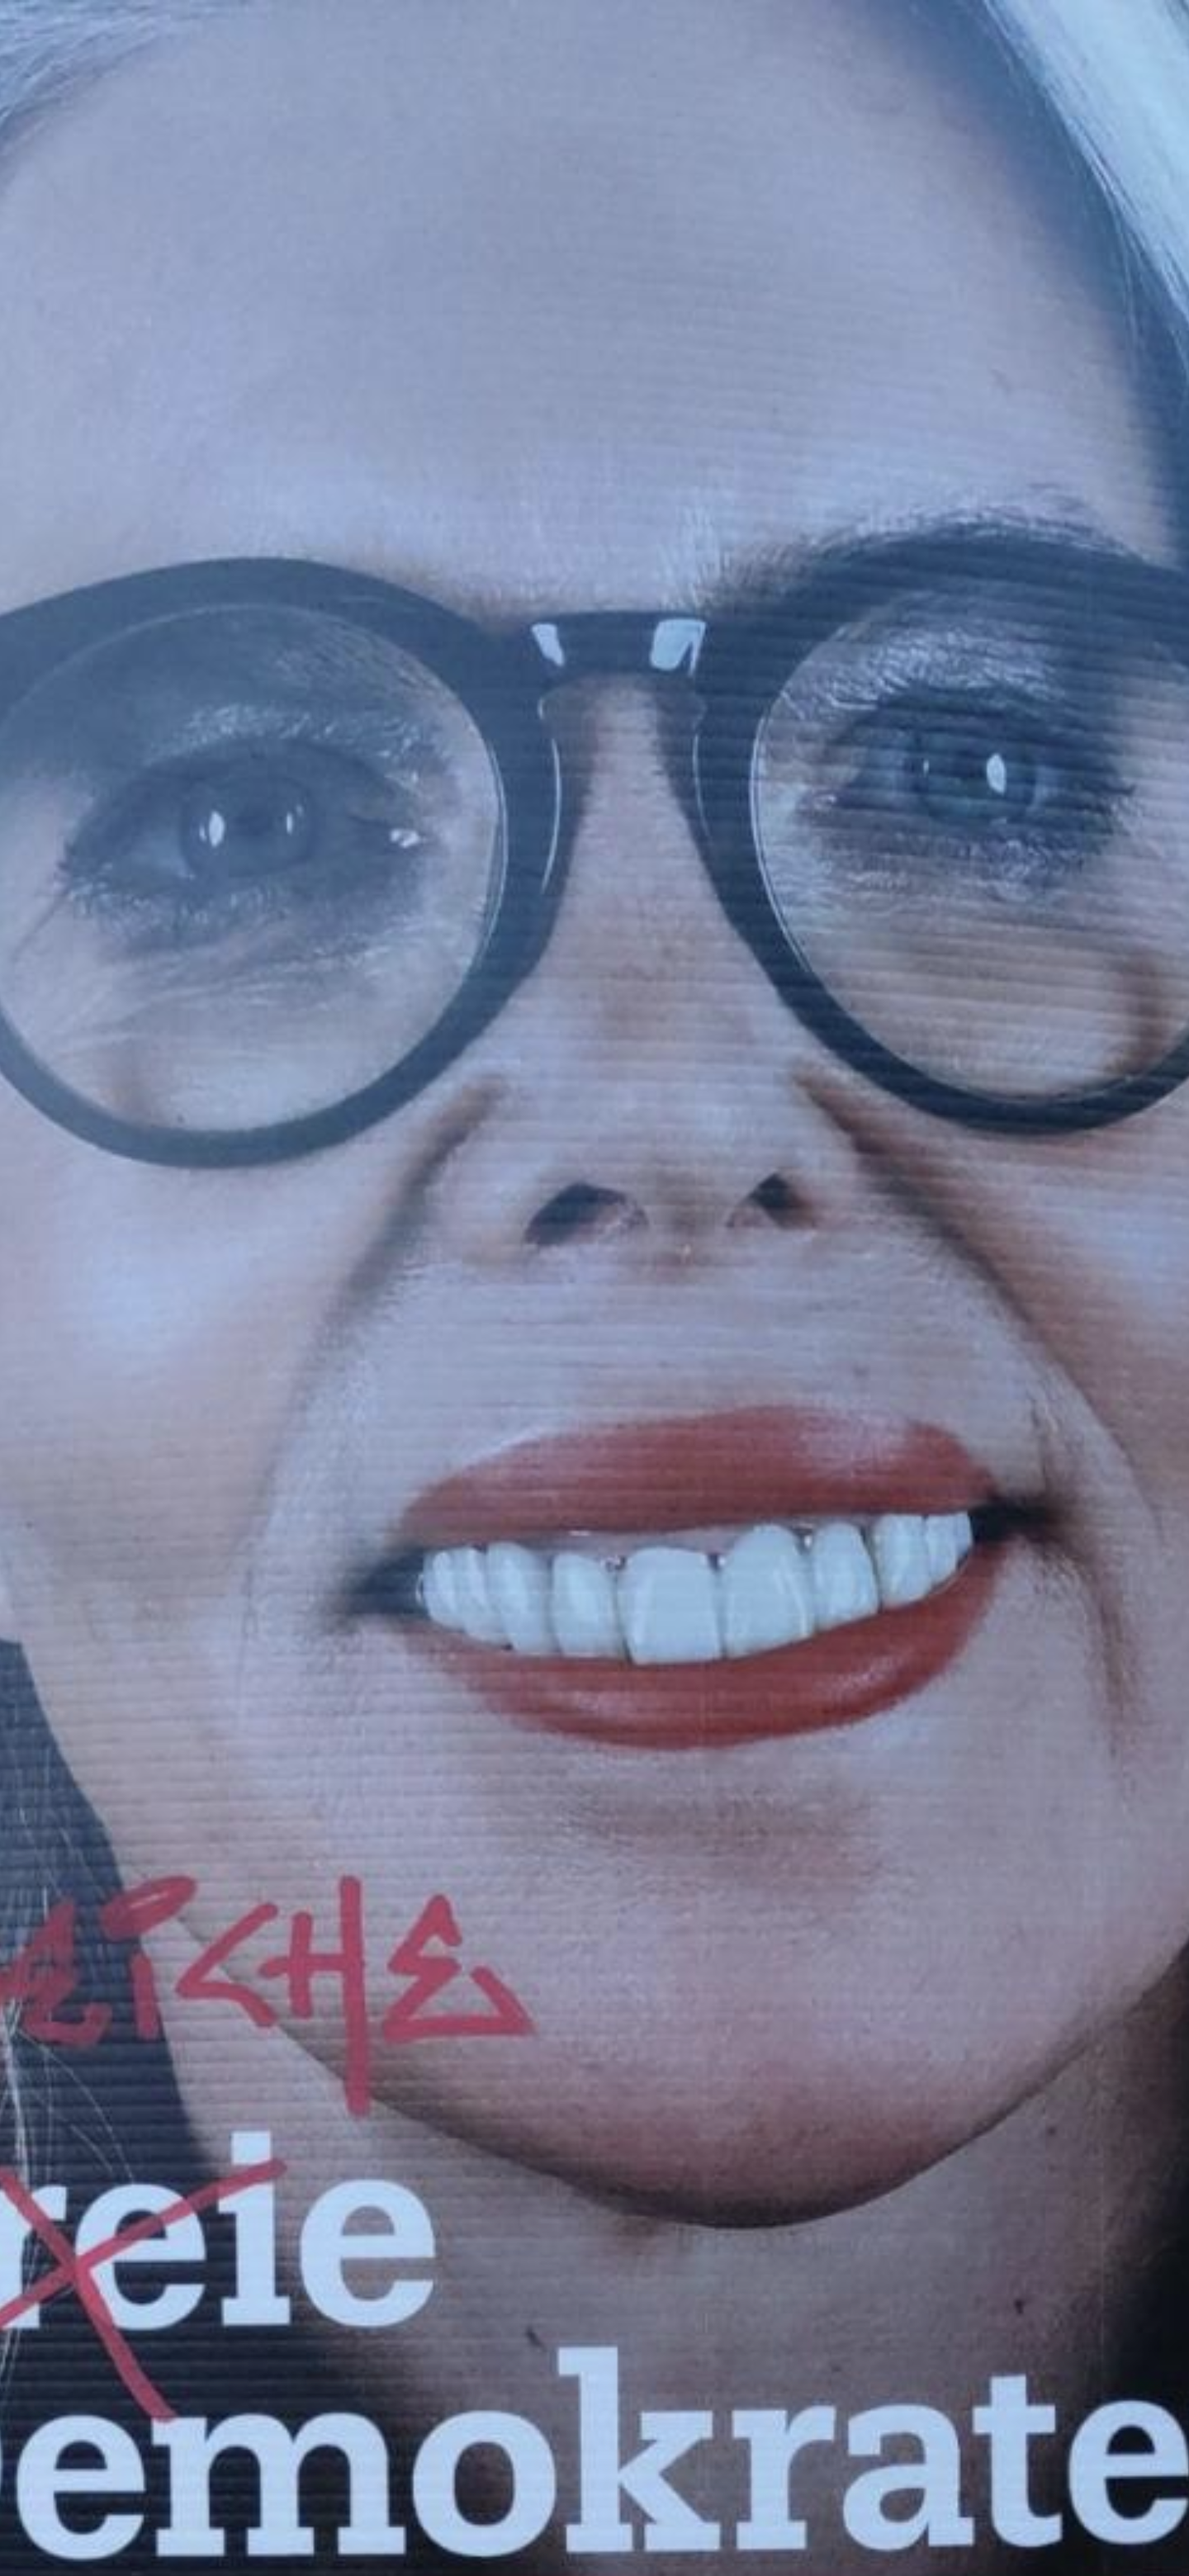 Eine Nahaufnahme von einem ungläubigen Gesicht, das von einem Wahlplakat abfotografiert wurde